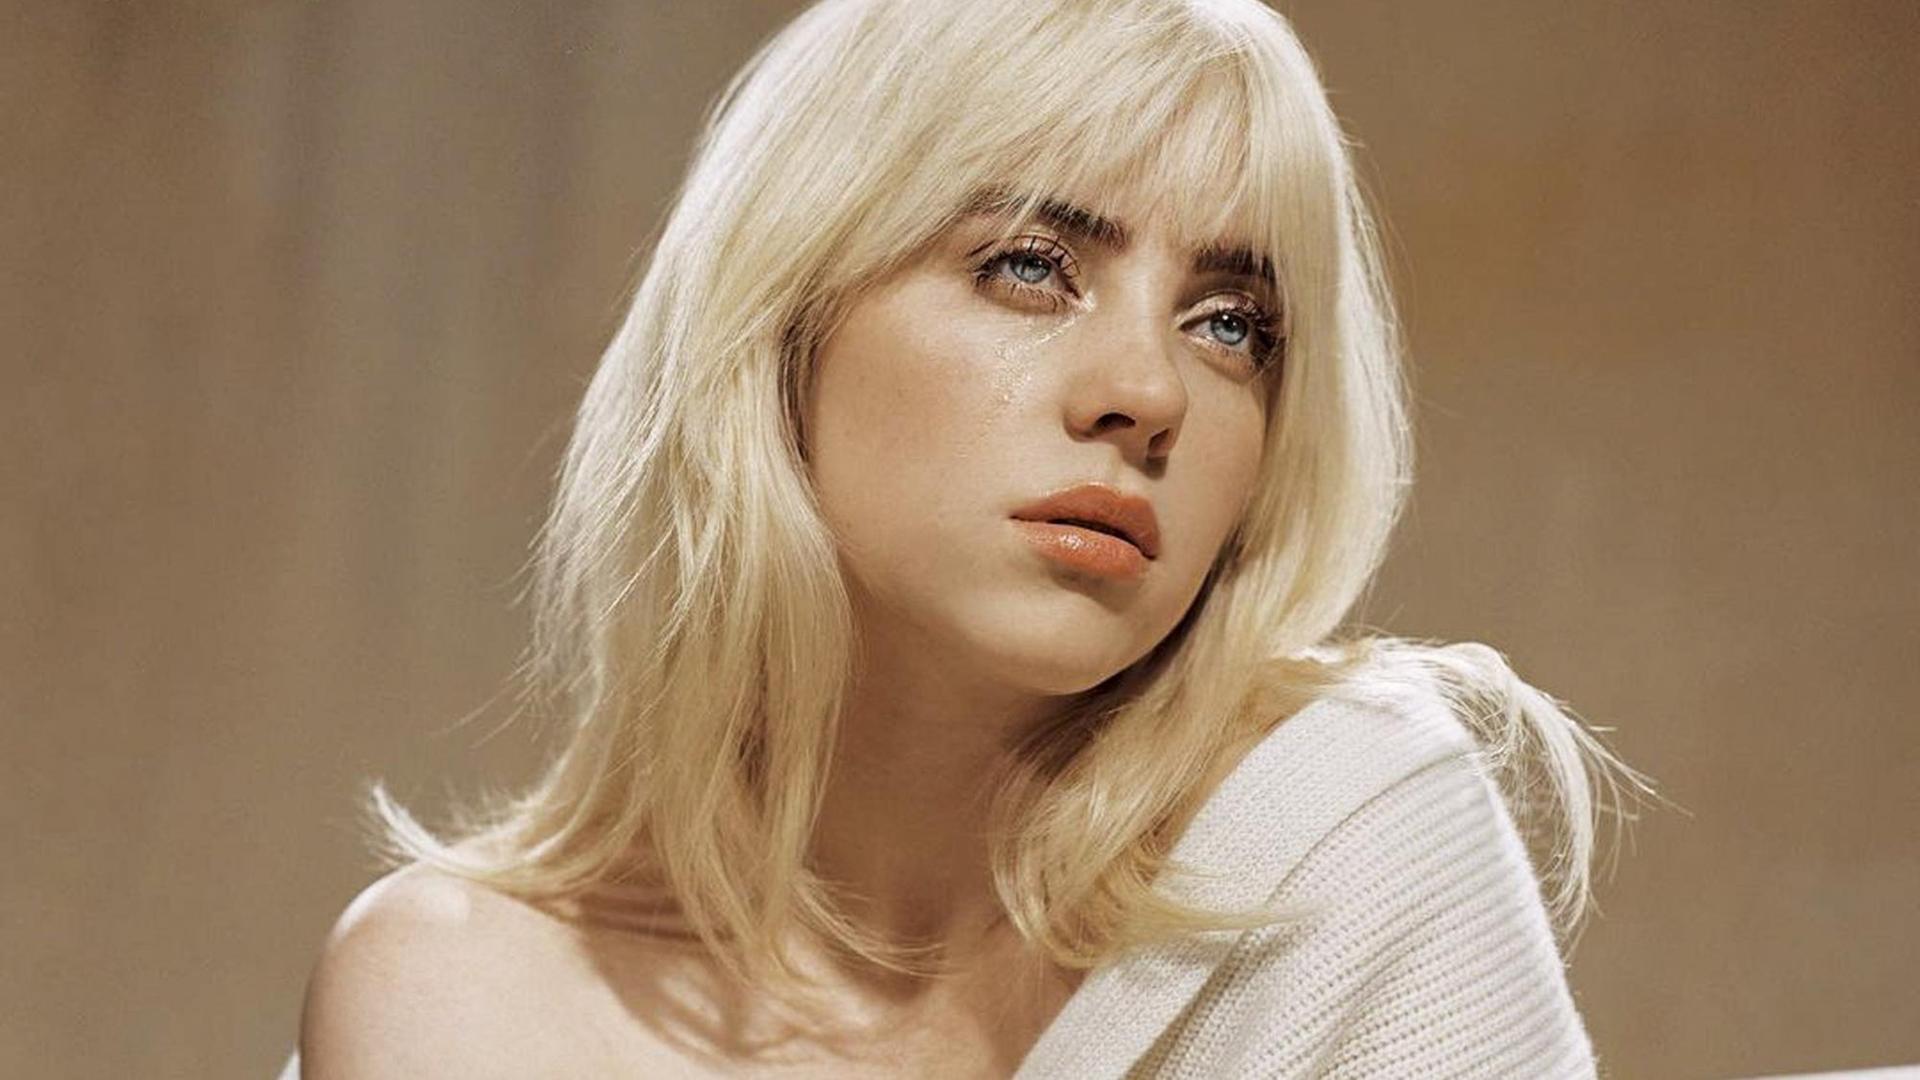 Screenshot eines Social-Media-Posts der Musikerin Billie Eilish: Das Oberkörperporträt zeigt die Sängerin in einem cremefarbenen, schulterfreien Pullover und mit blondiertem Haar.